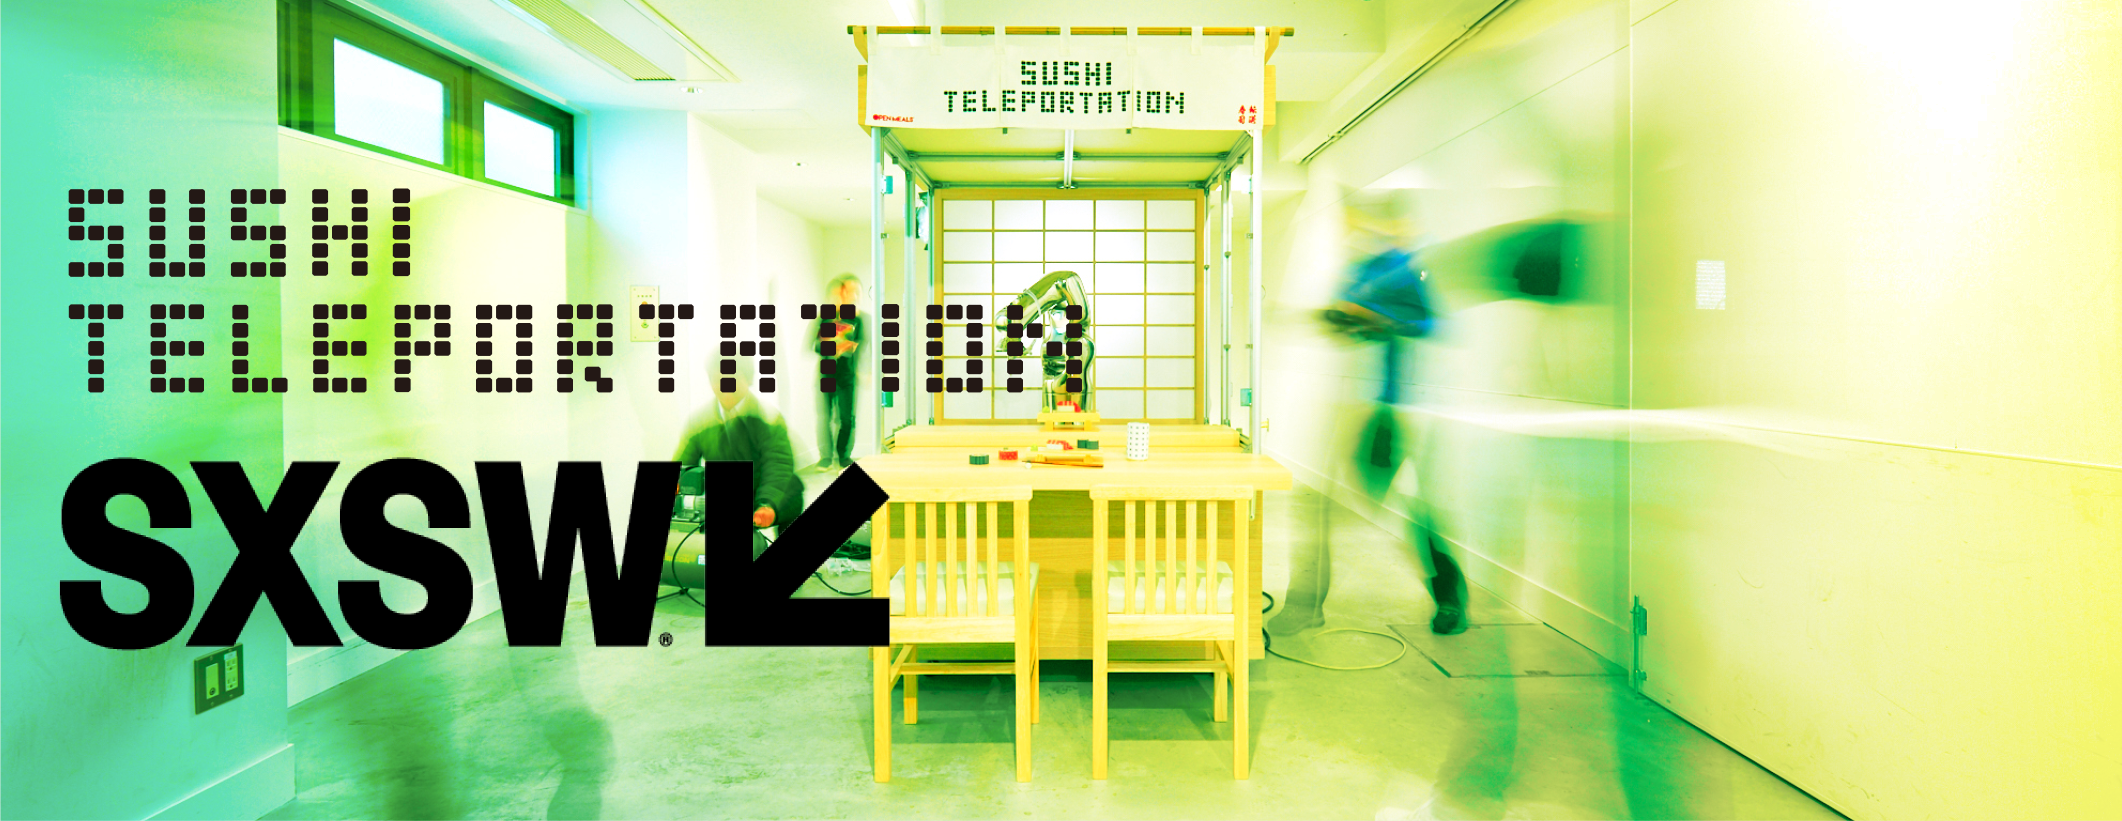 SUSHI TELEPOTATION SXSW